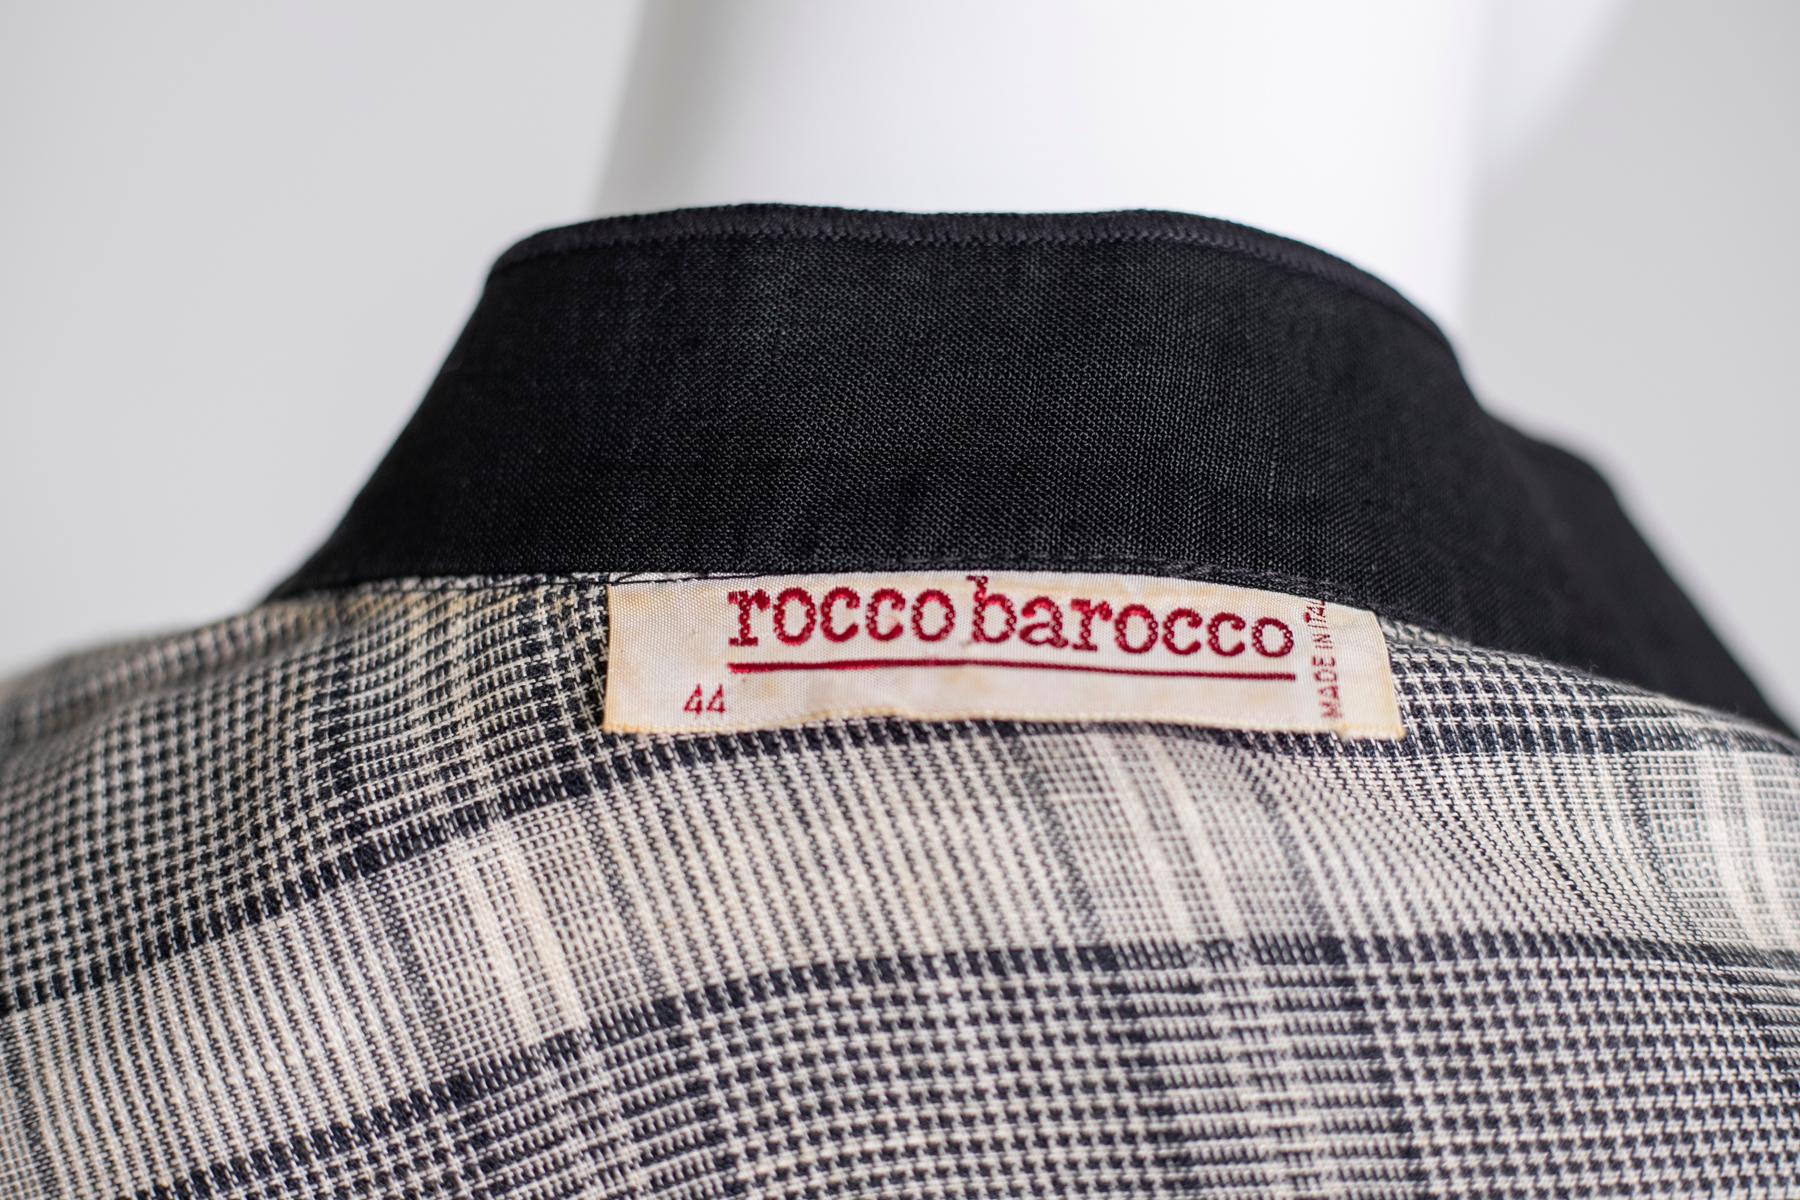 Magnifique chemise en coton conçue par Rocco Barocco dans les années 90, fabriquée en Italie.
ÉTIQUETTE ORIGINALE.
La chemise est entièrement en coton, très élégante. Il possède un col standard, qui se raccorde au centre du chemisier, composé de 6